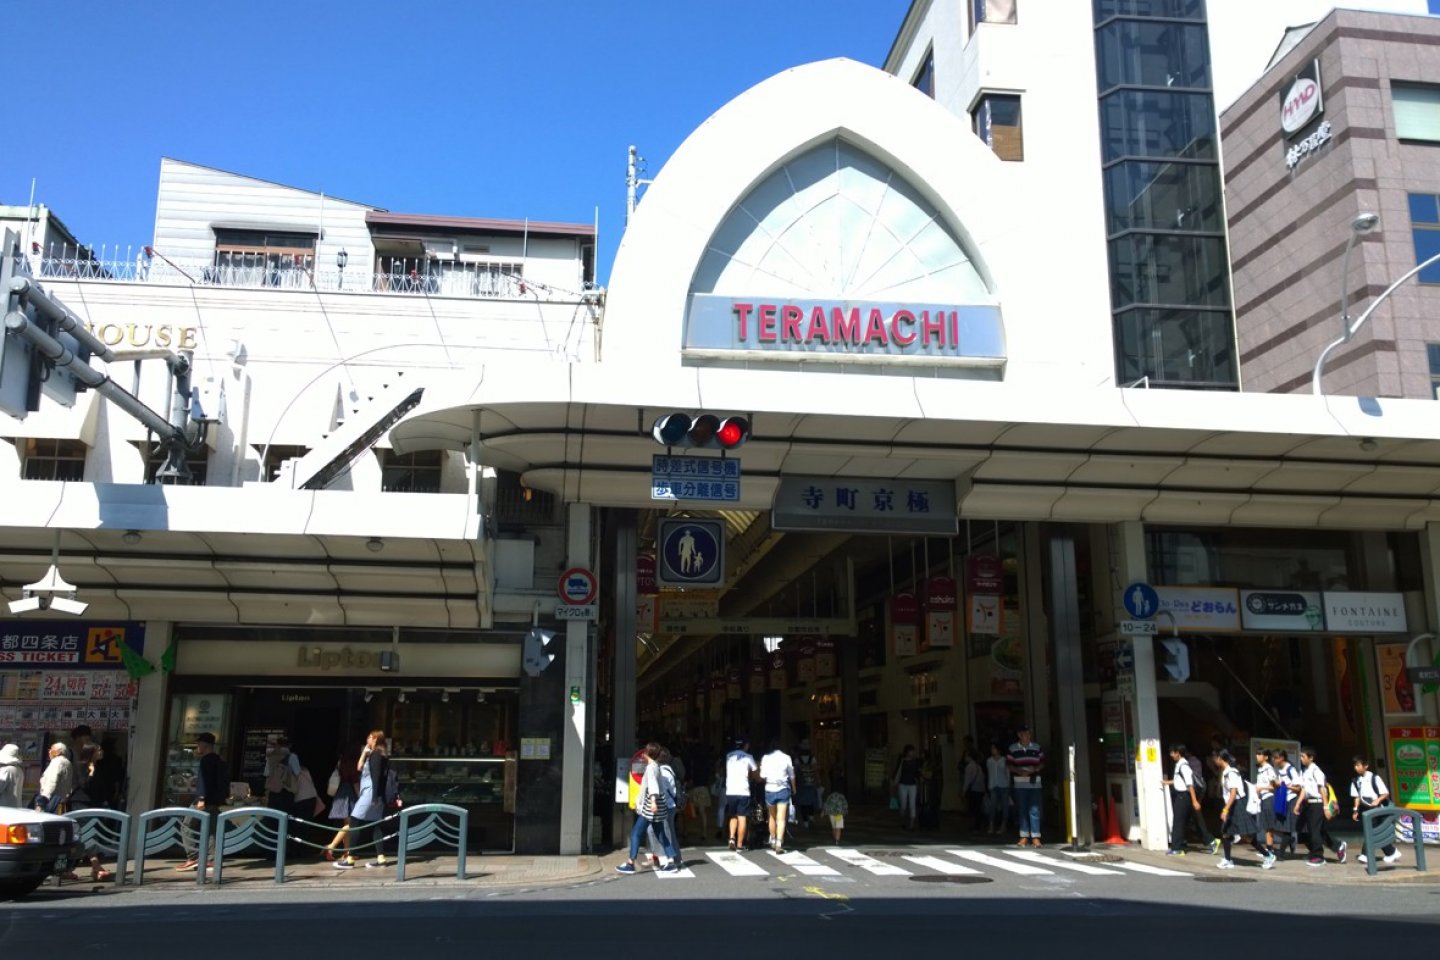 ถนนเทรามาฉิ (寺町通 - Teramachi Street) ย่านการค้าเก่าแก่ของเกียวโตที่ทำการค้ามานานกว่า 400 ปี ปัจจุบันนั้นเป็นย่านการค้าที่ทันสมัย มีร้านค้าต่างๆ มากมายกระจายตัวอยู่ในถนนช้อปปิ้งสายเล็กๆ นี้ และนี่ก็คือประตูทางเข้าฝั่งถนน Shijo ที่เป็นที่รู้จักกันเป็นอย่างดีนั่นเอง ซึ่งบริเวณนี้ยังรายรอบด้วยแหล่งช้อปปิ้งที่ทันสมัย ร้านค้าท้องถิ่น ตลอดจนศาลเจ้าอันศักดิ์สิทธิ์ ที่แทรกตัวอยู่ในเมืองใหญ่บนวิถีชีวิตประจำวันยุคใหม่ได้อย่างกลมกลืนลงตัว